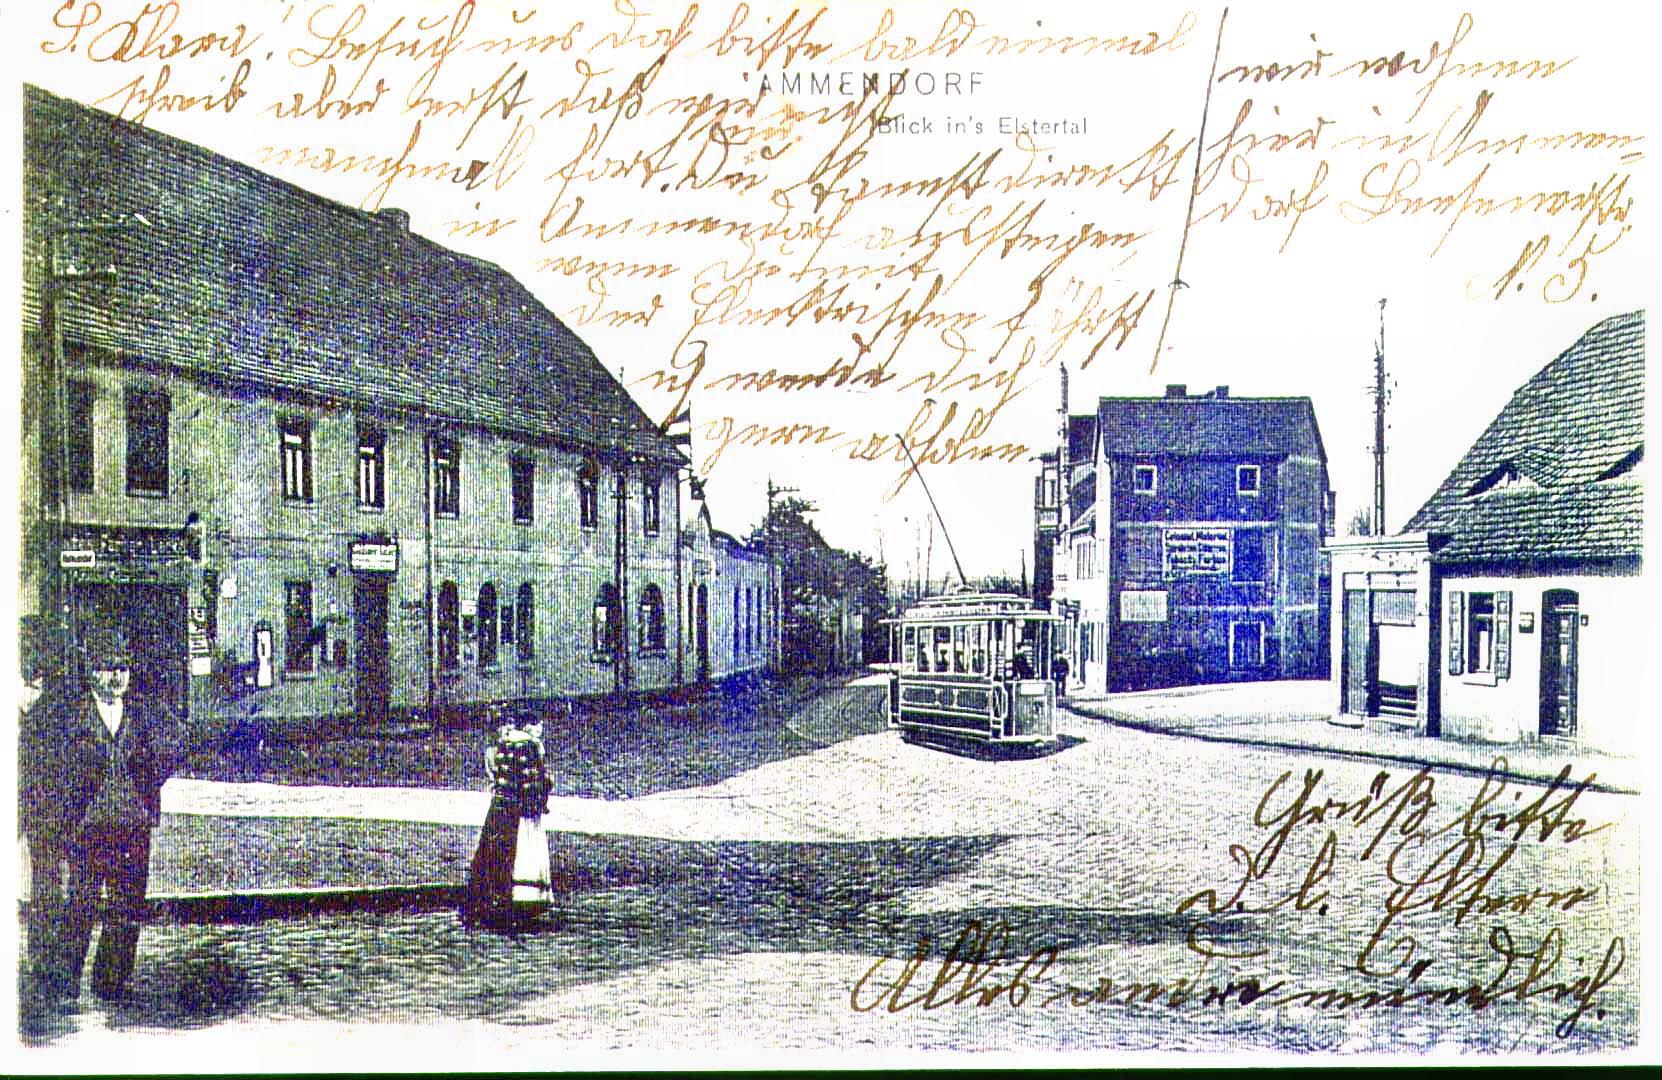 Blick ins Elstertal aus Ammendorf (li: Goldener Adler) (ca. 1899)